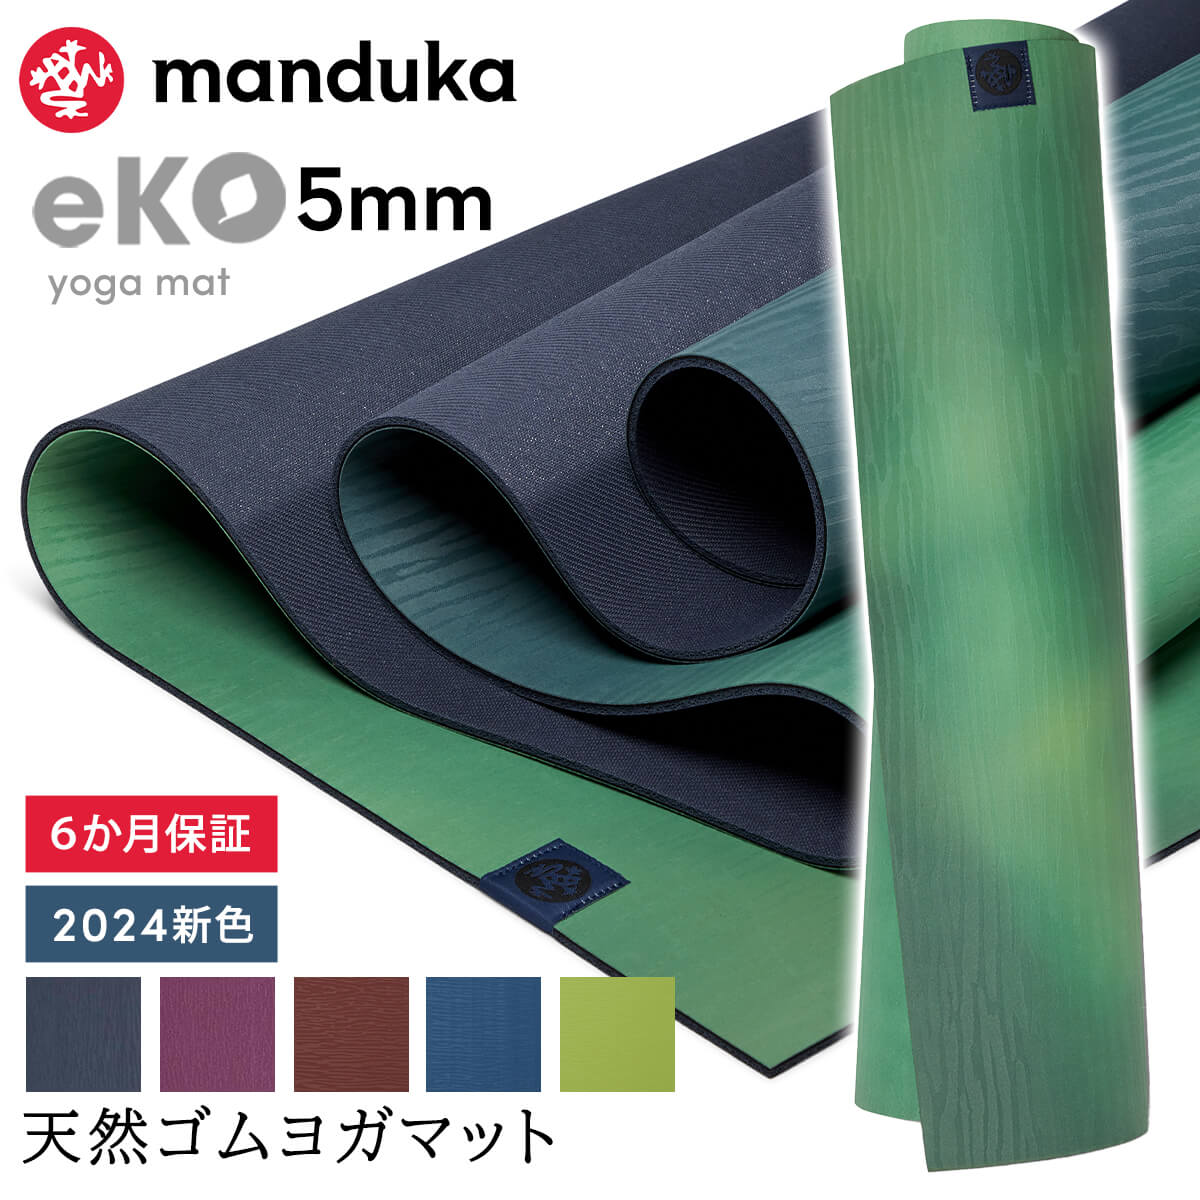 マンドゥカ Manduka ヨガマット エコ 5mm 《6か月保証》日本正規品 | eKO yoga mat 筋トレ ピラティス トレーニング 天然ゴム 柄 24SS TR [ST-MA]001 RVPA 401105111